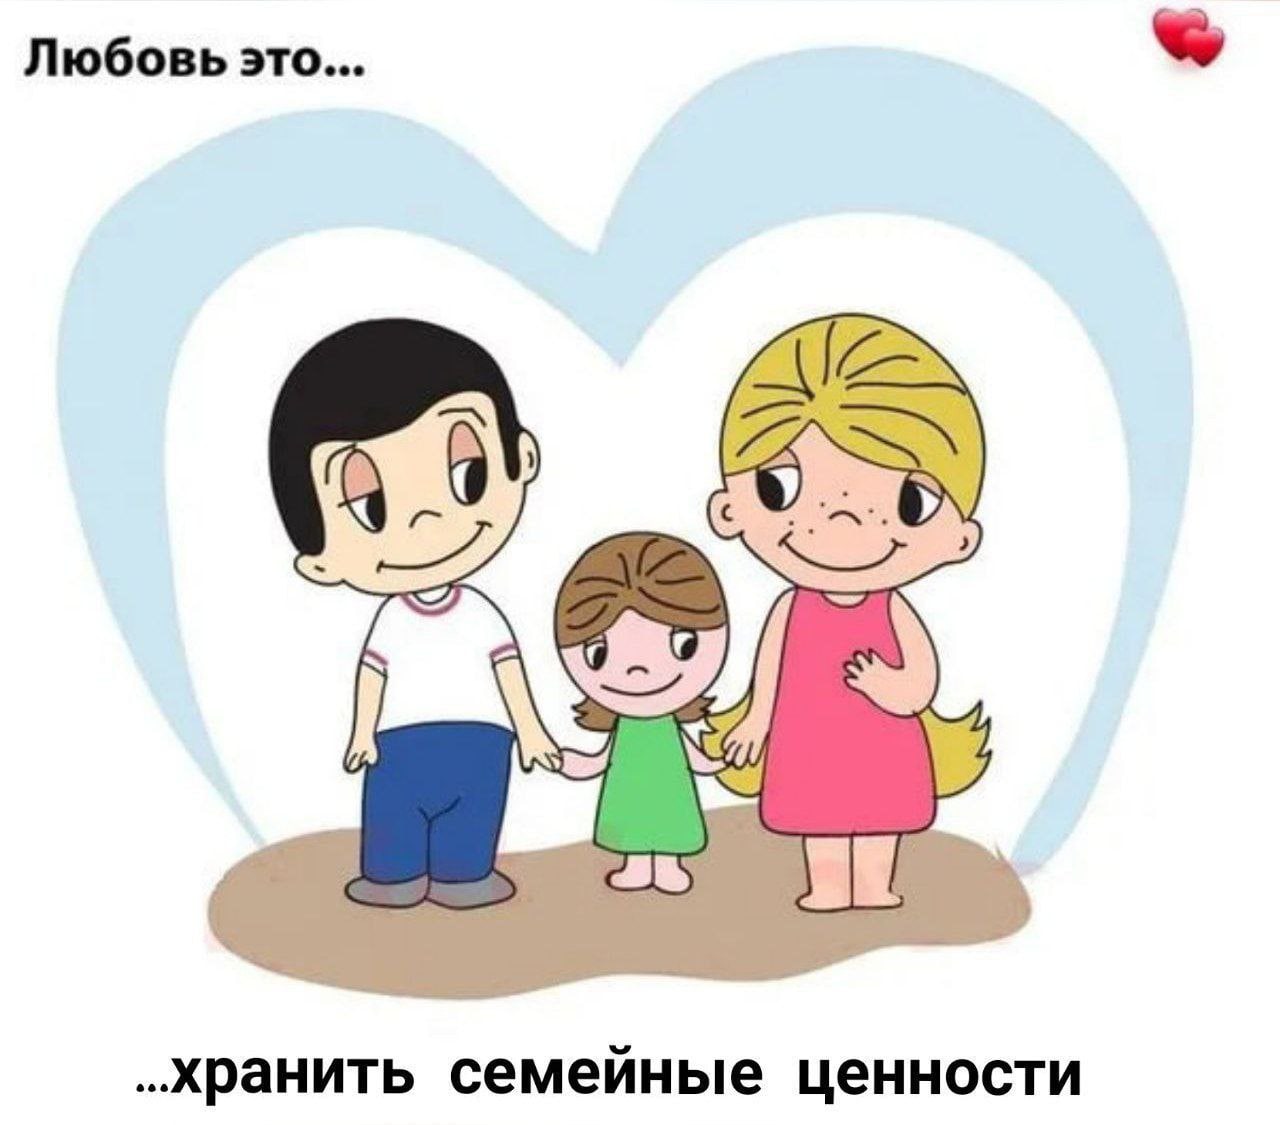 Go love family